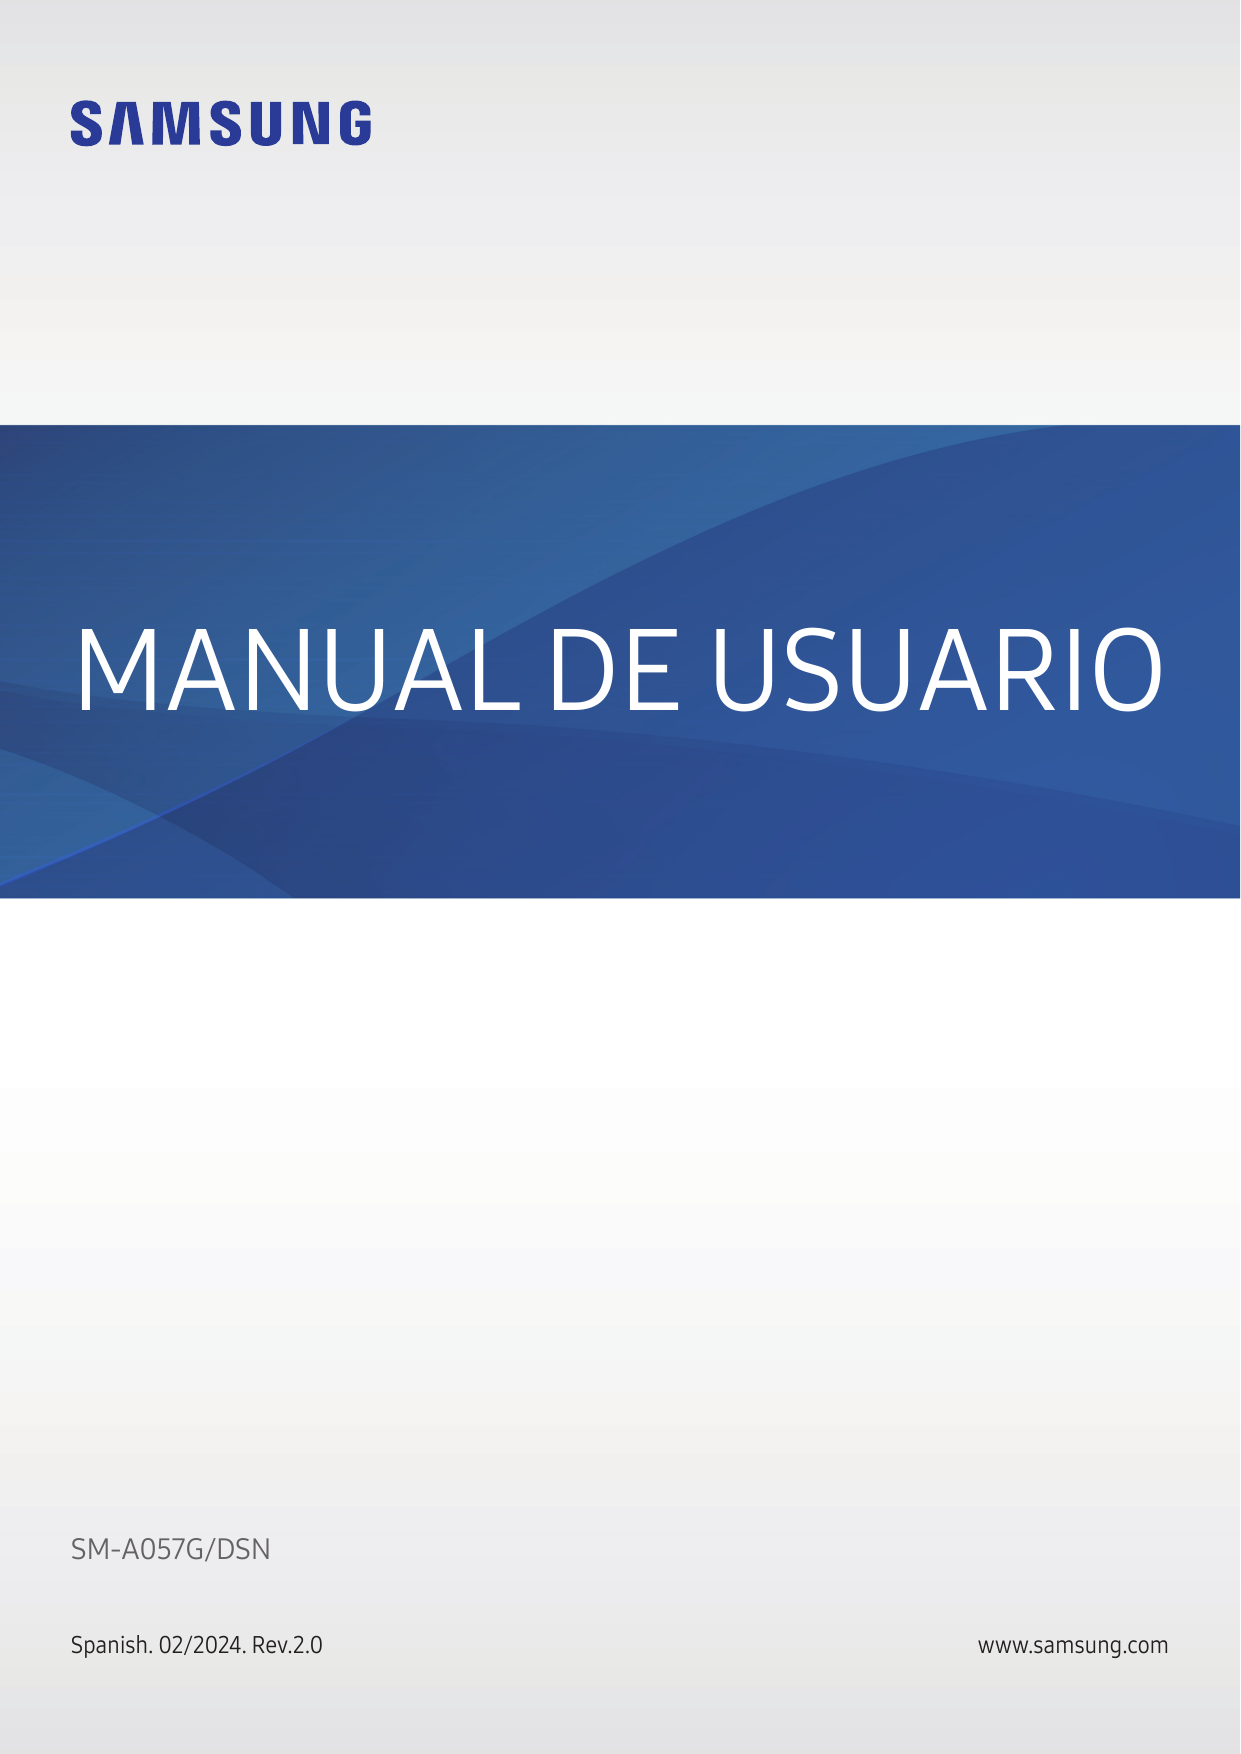 MANUAL DE USUARIOSM-A057G/DSNSpanish. 02/2024. Rev.2.0www.samsung.com